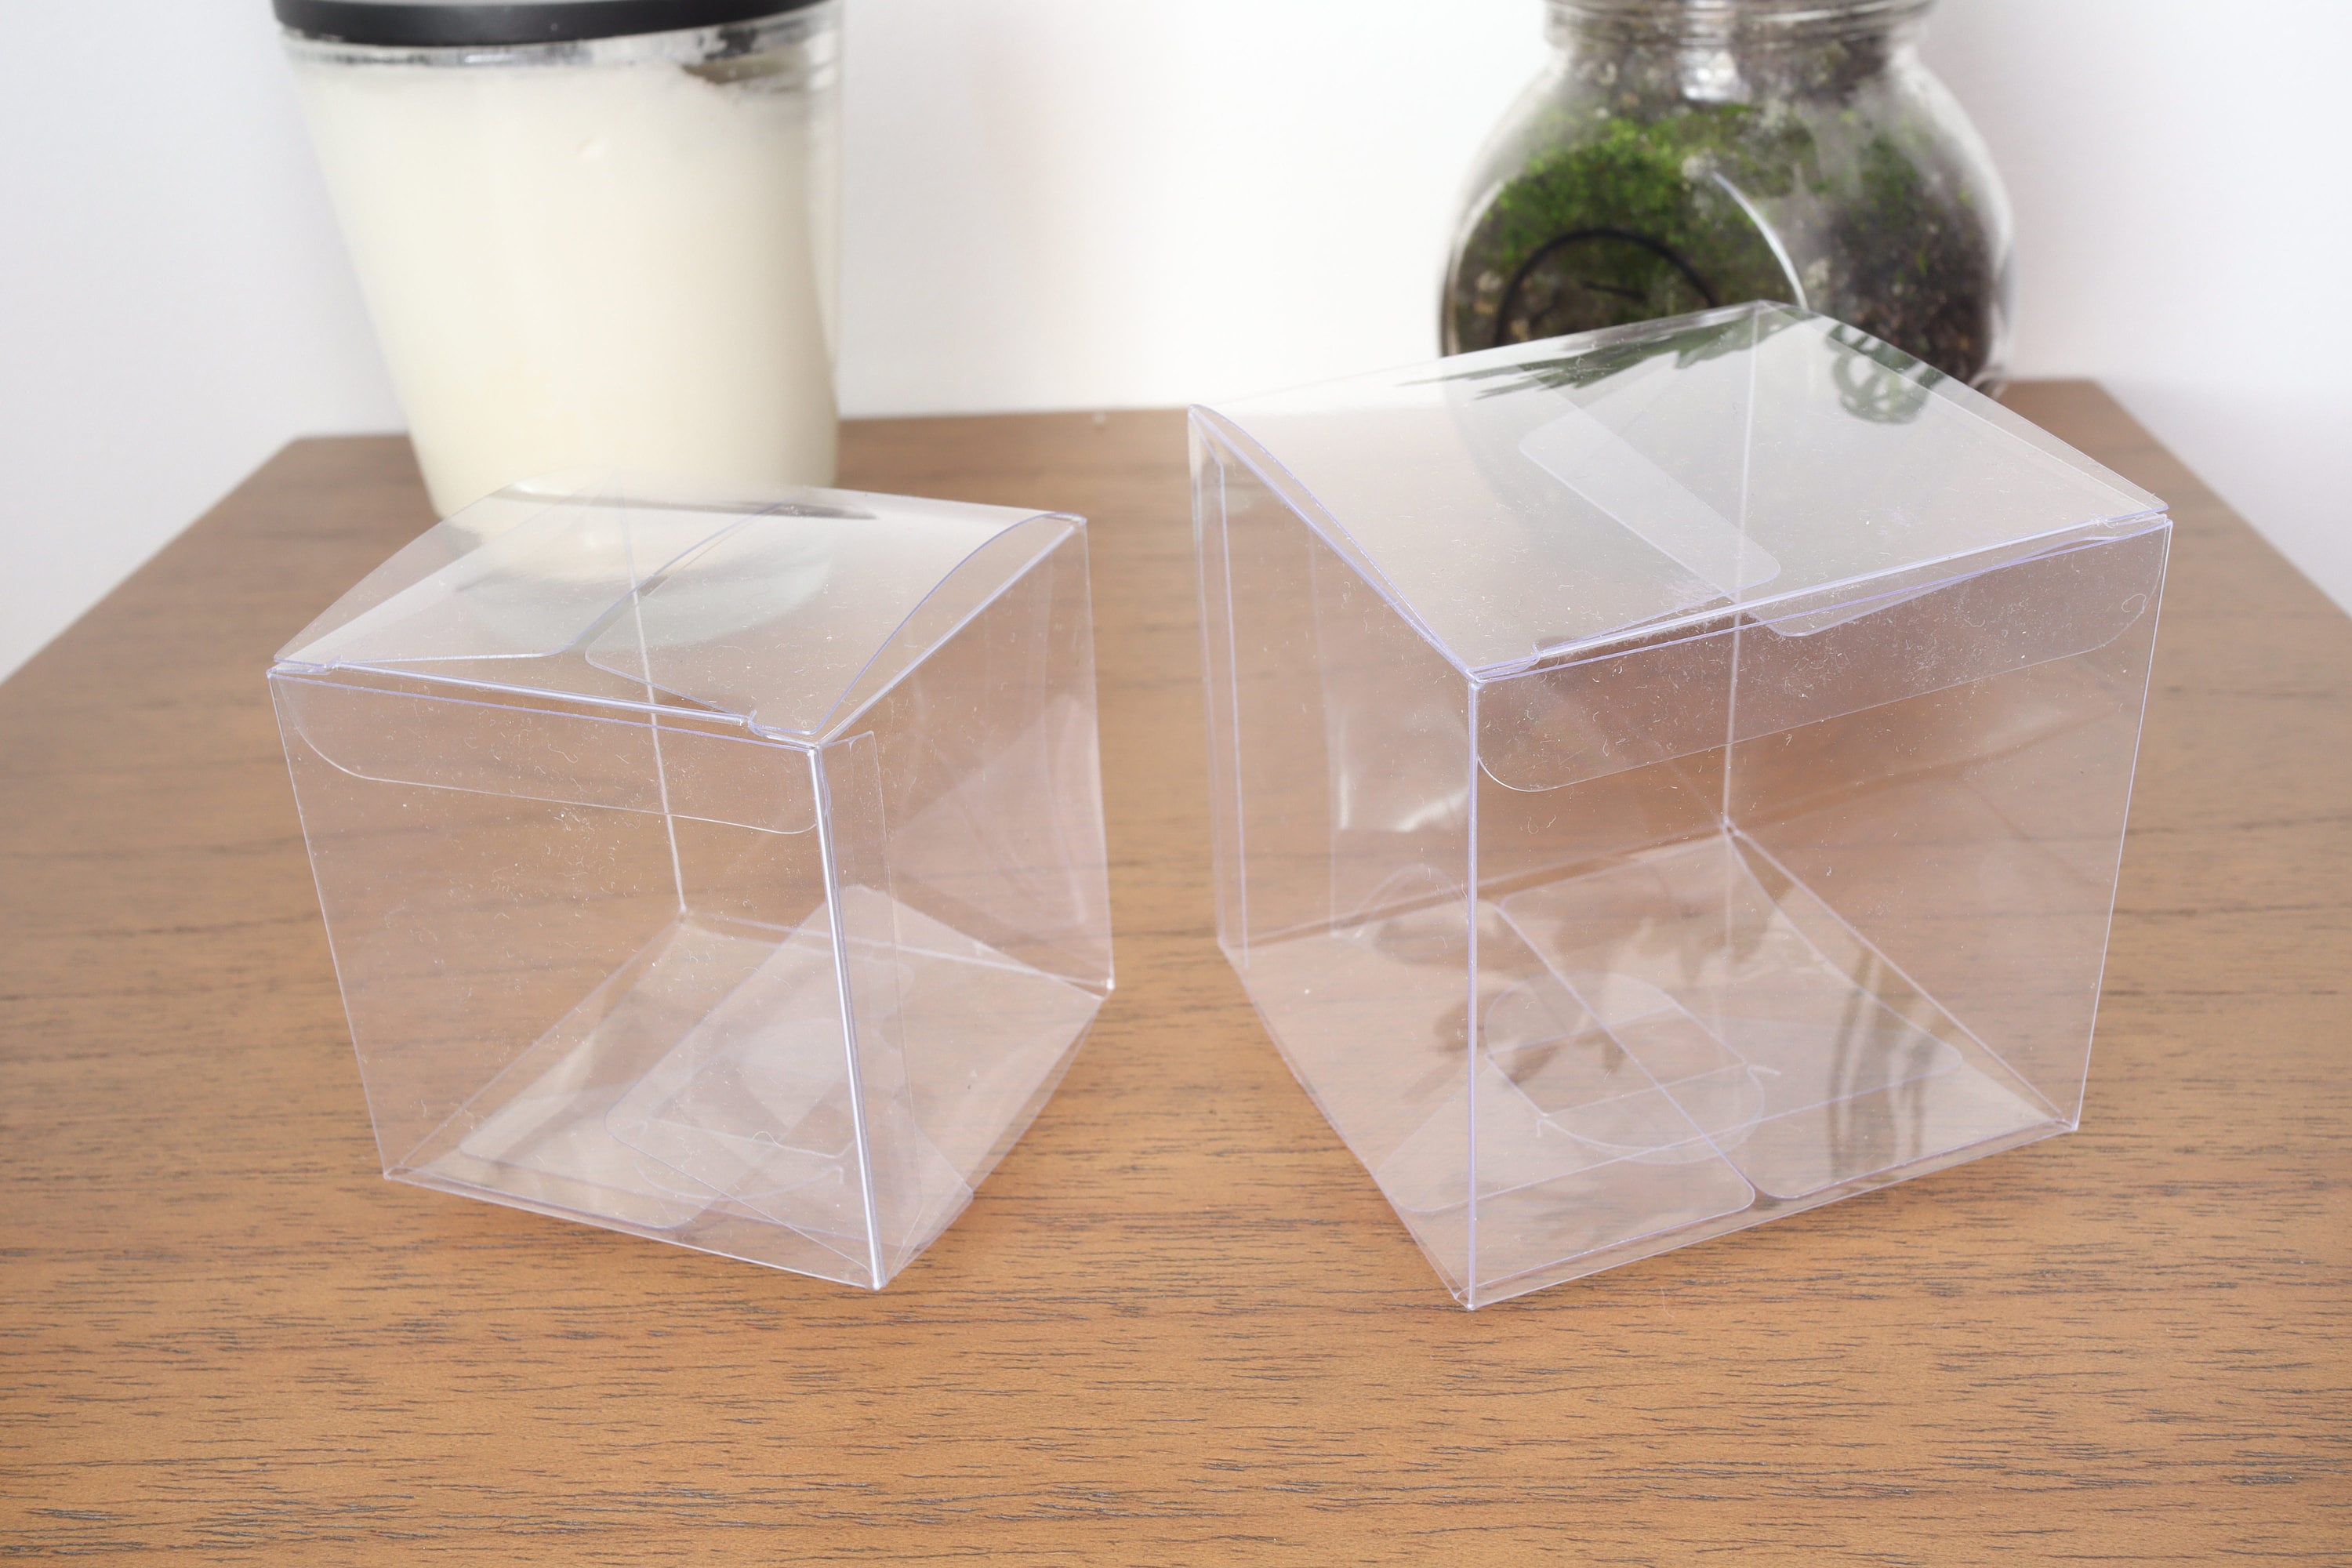 12cm 10cm 9cm 8/7/6cm Large Clear PVC Box Transparent Gift Box